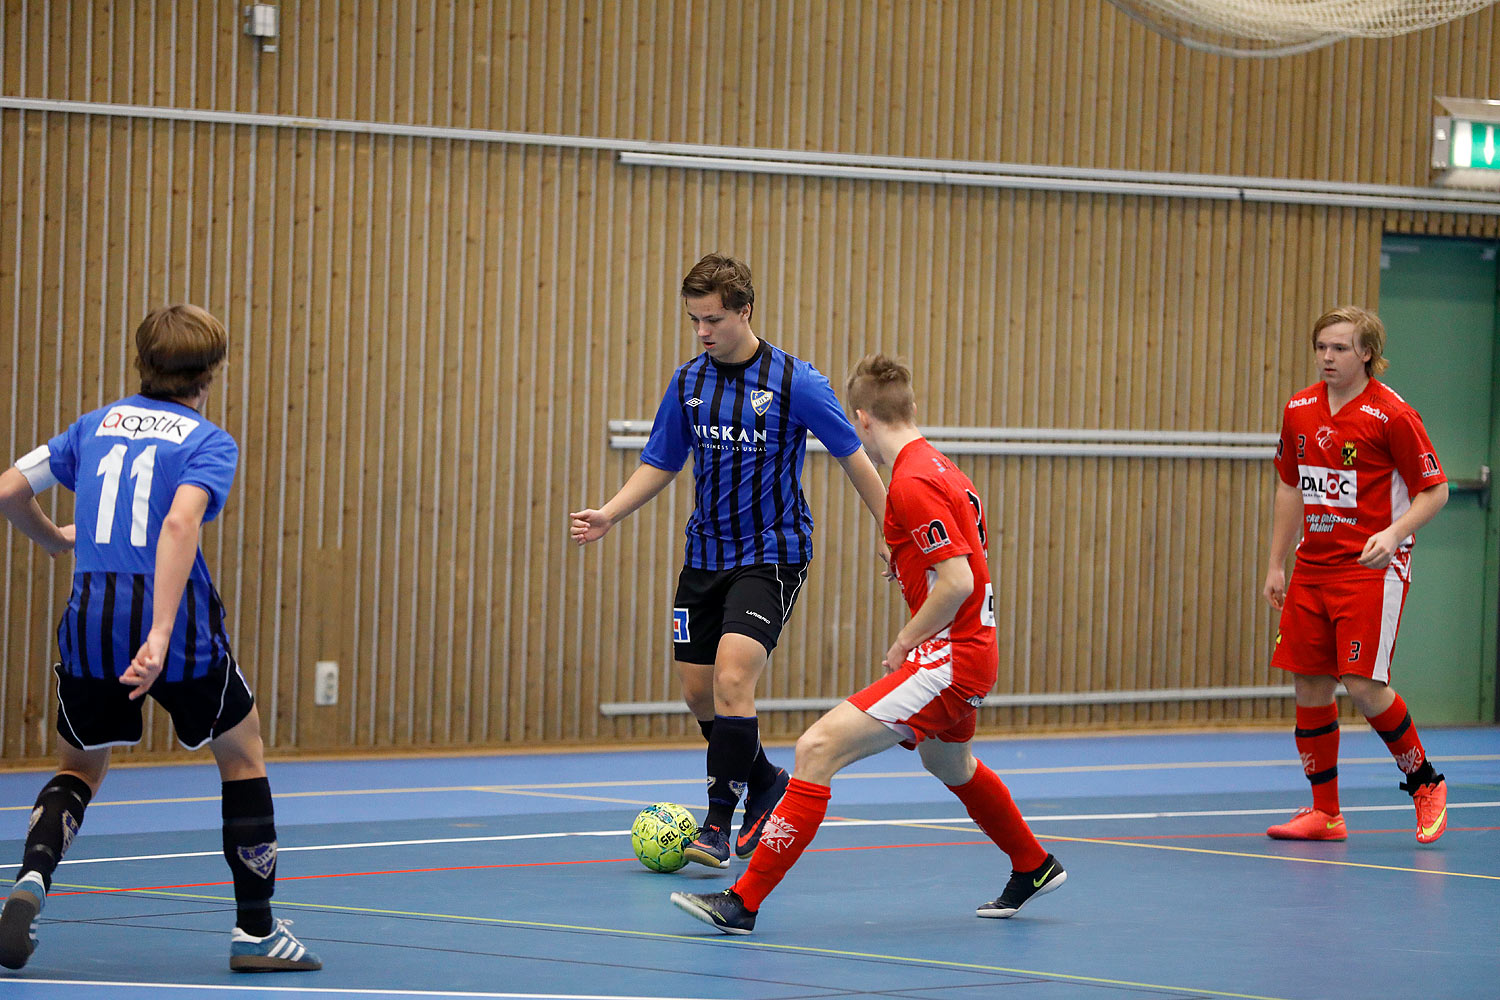 Skövde Futsalcup Herrjuniorer Ulricehamns IFK-Töreboda IK,herr,Arena Skövde,Skövde,Sverige,Skövde Futsalcup 2016,Futsal,2016,141930